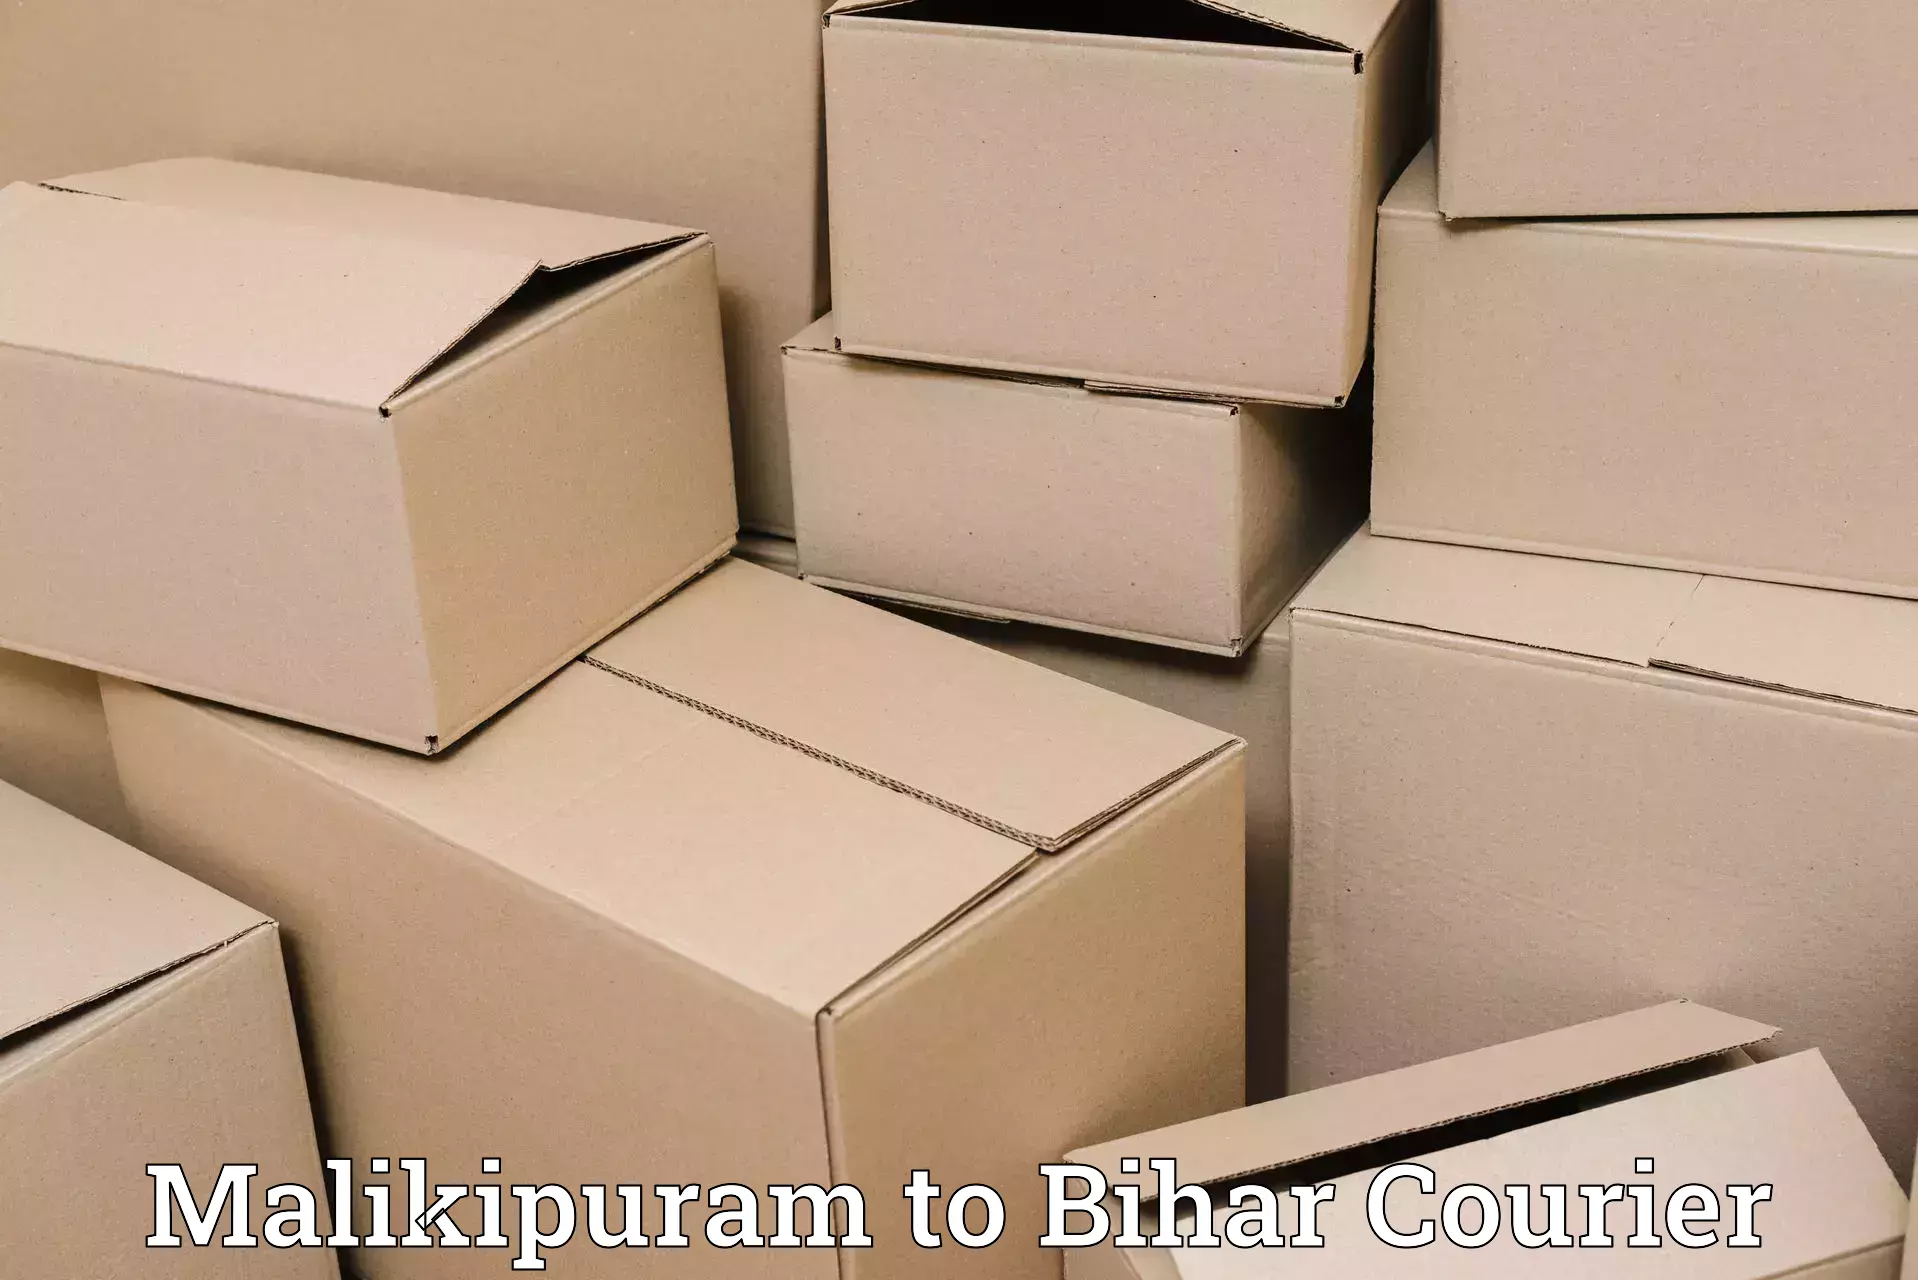 Affordable parcel service Malikipuram to Dinara